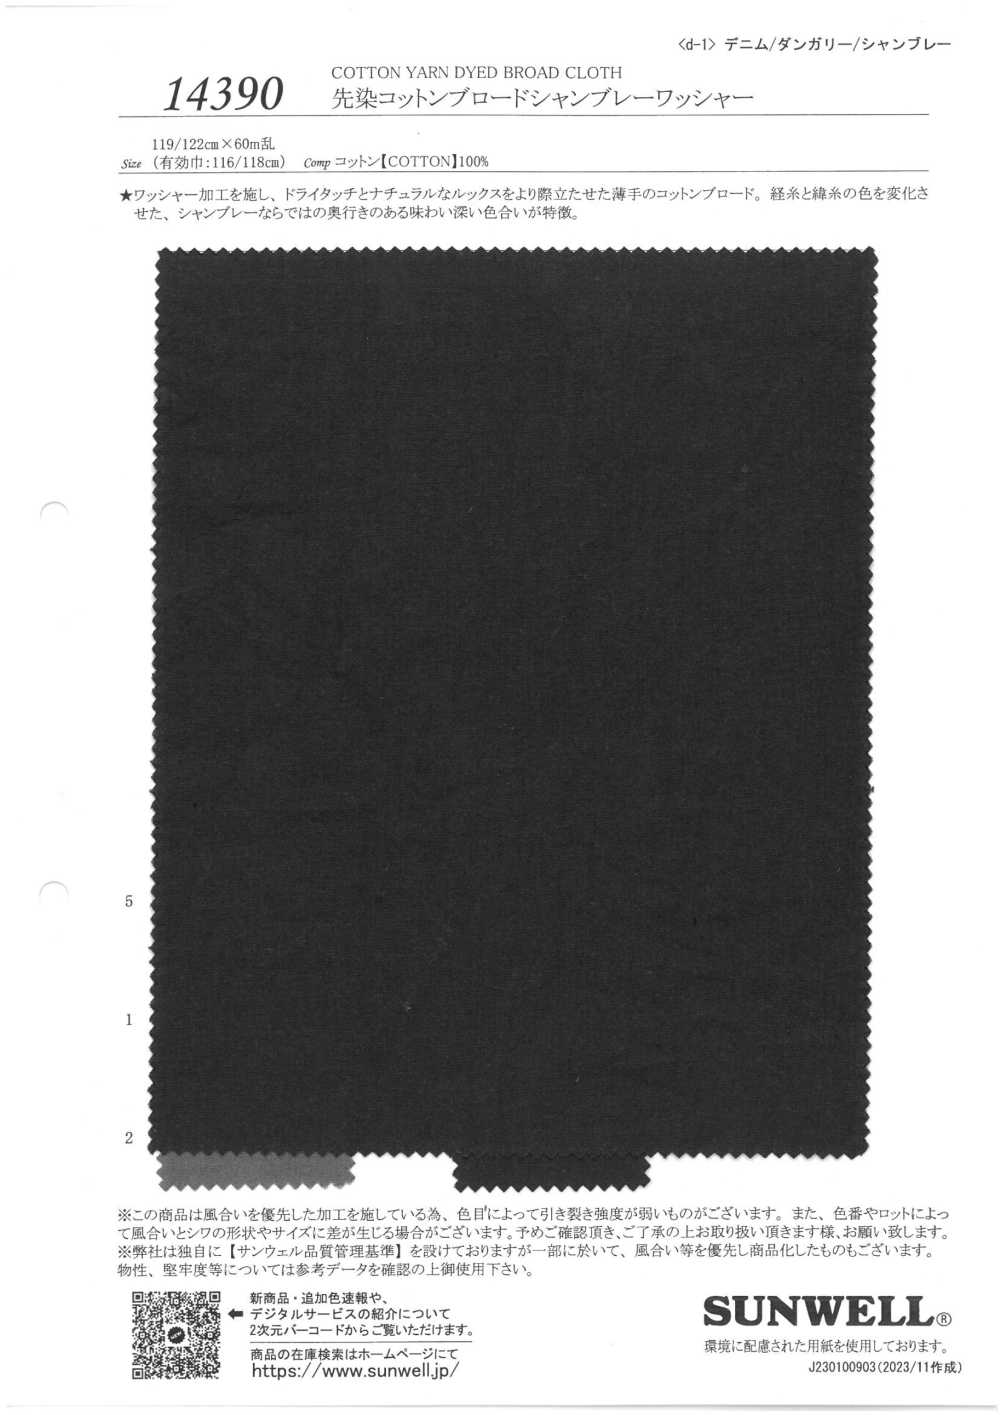 14390 Gia Công Máy Vải Chambray Bông Vải Broadcloth Nhuộm Sợi SUNWELL ( Giếng Trời )